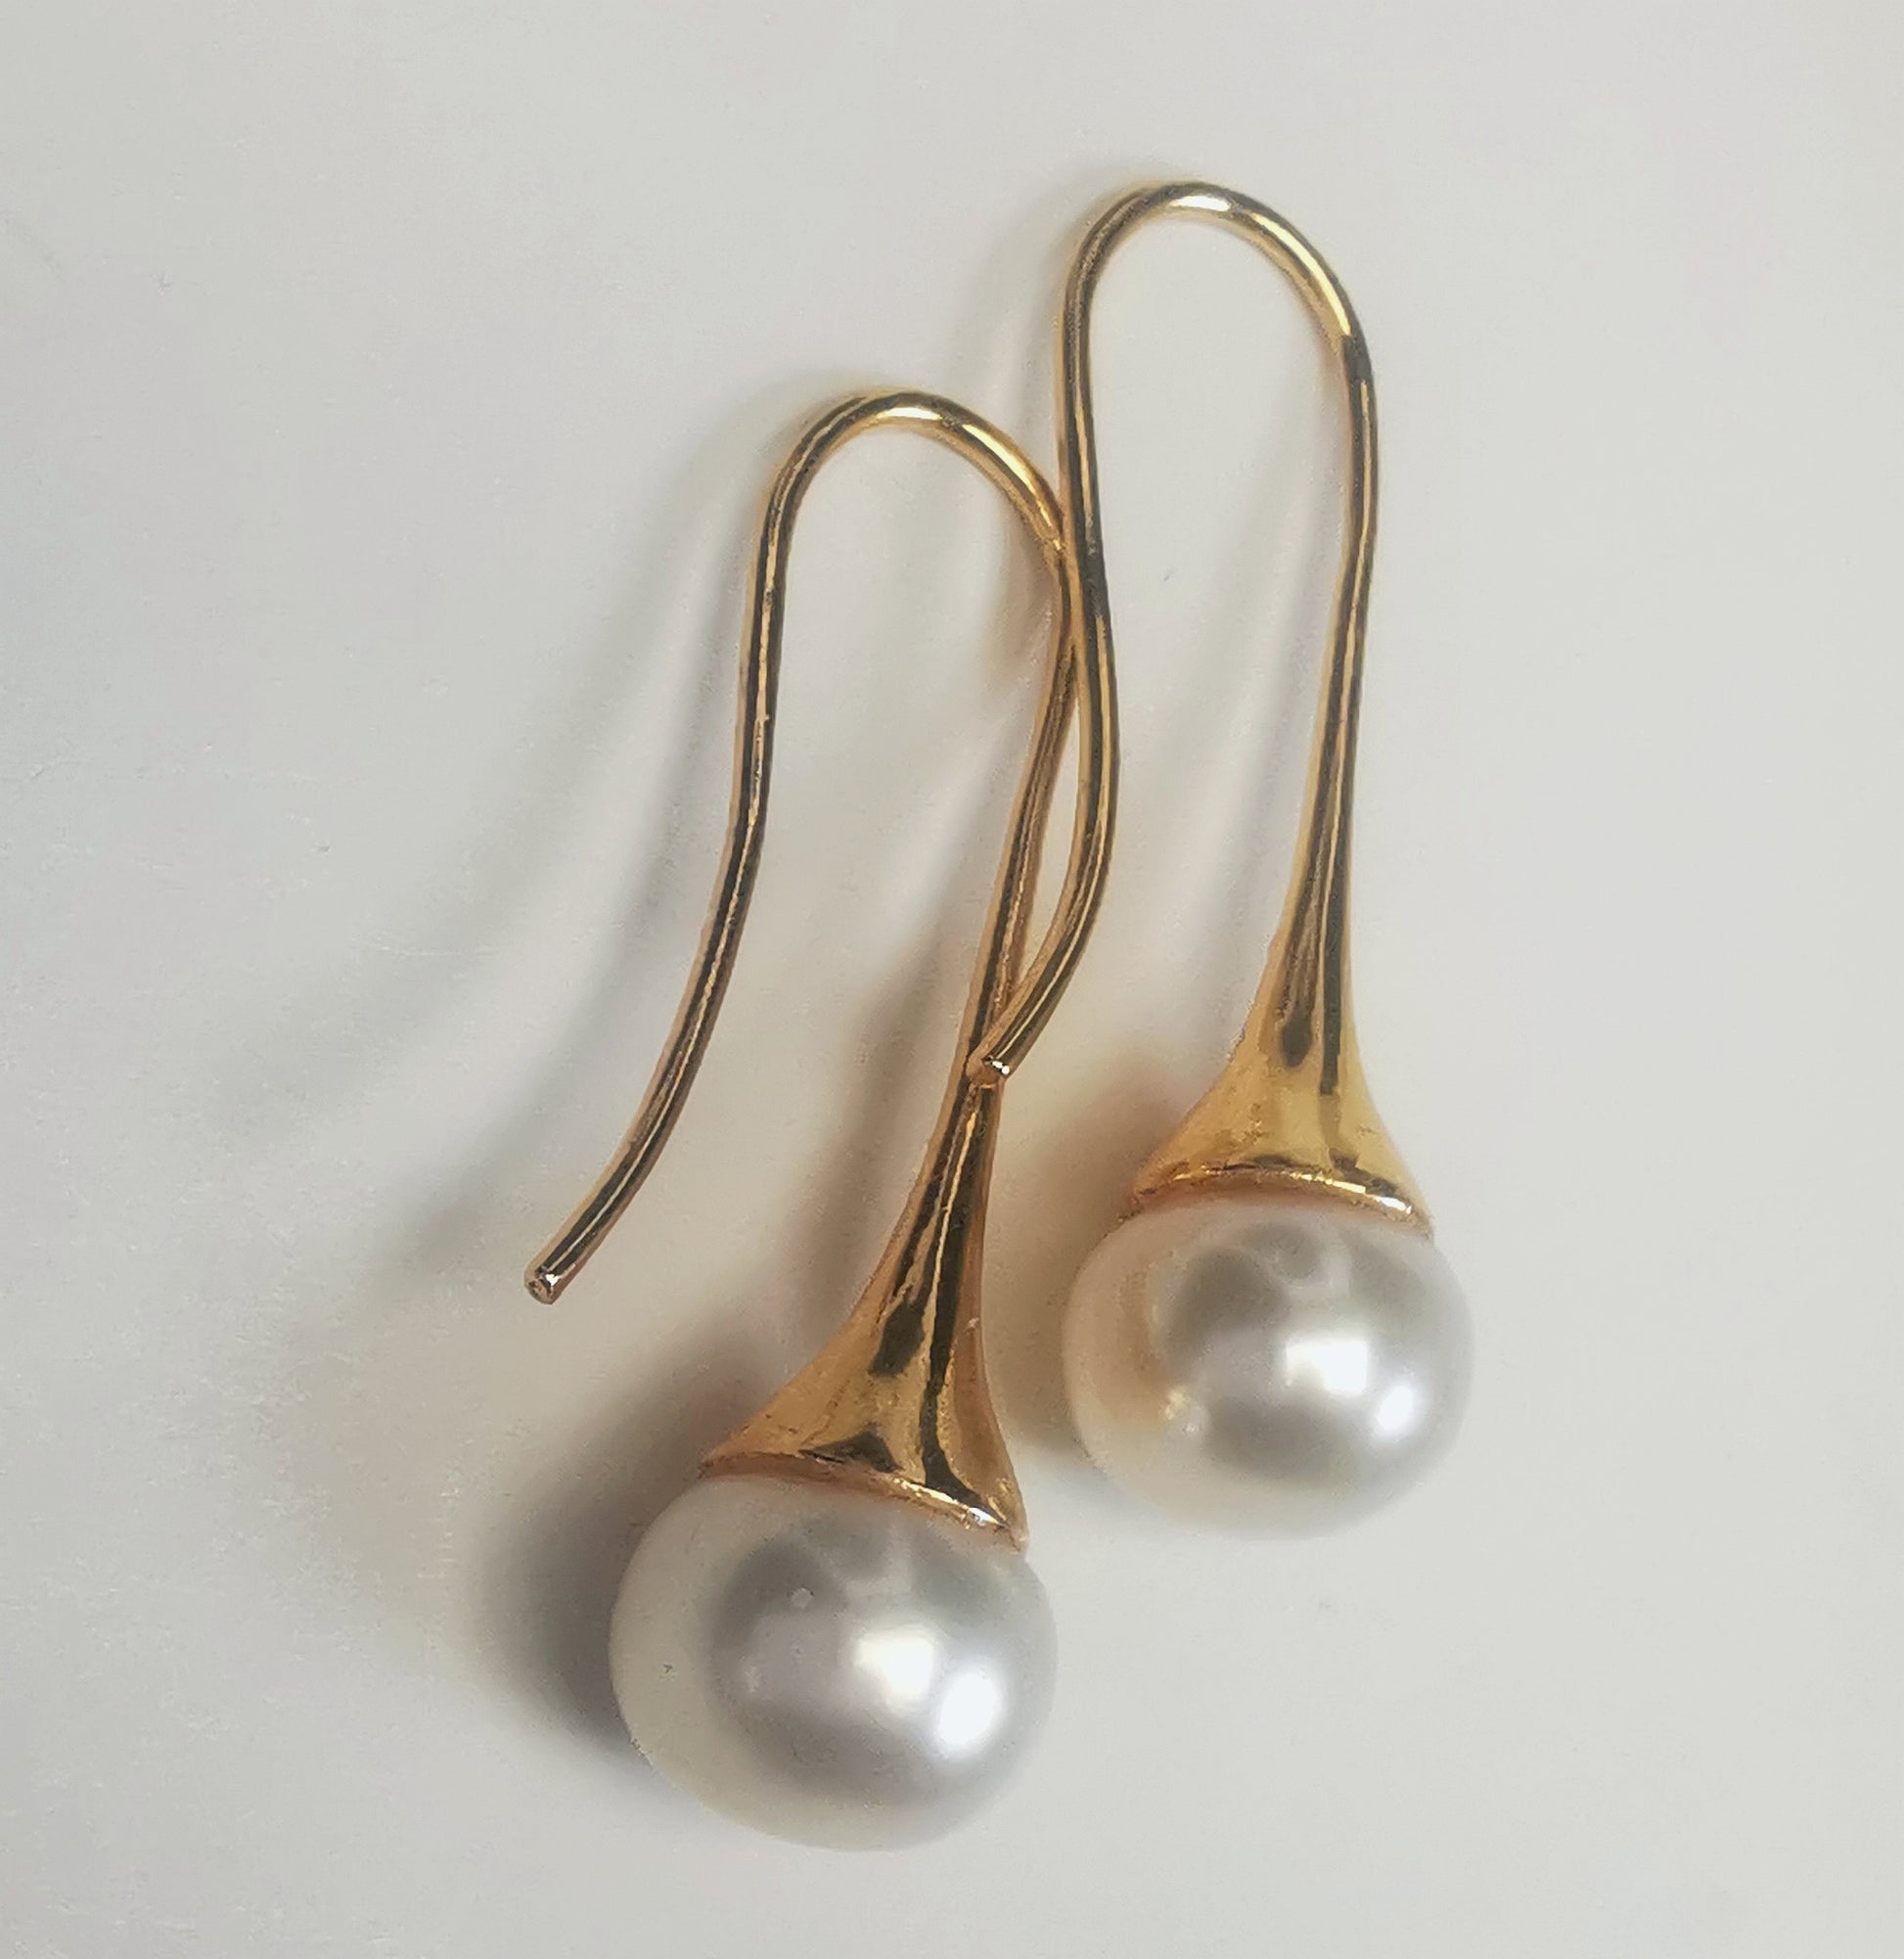 Boucles d'oreilles perles de culture blanches 9mm sur pendants longs plaqués or. Présentées cote o cote, perles en bas, pendants tournés vers la gauche, boucle droite décalée vers le haut, sur fond blanc. Vue en gros plan de dessus.